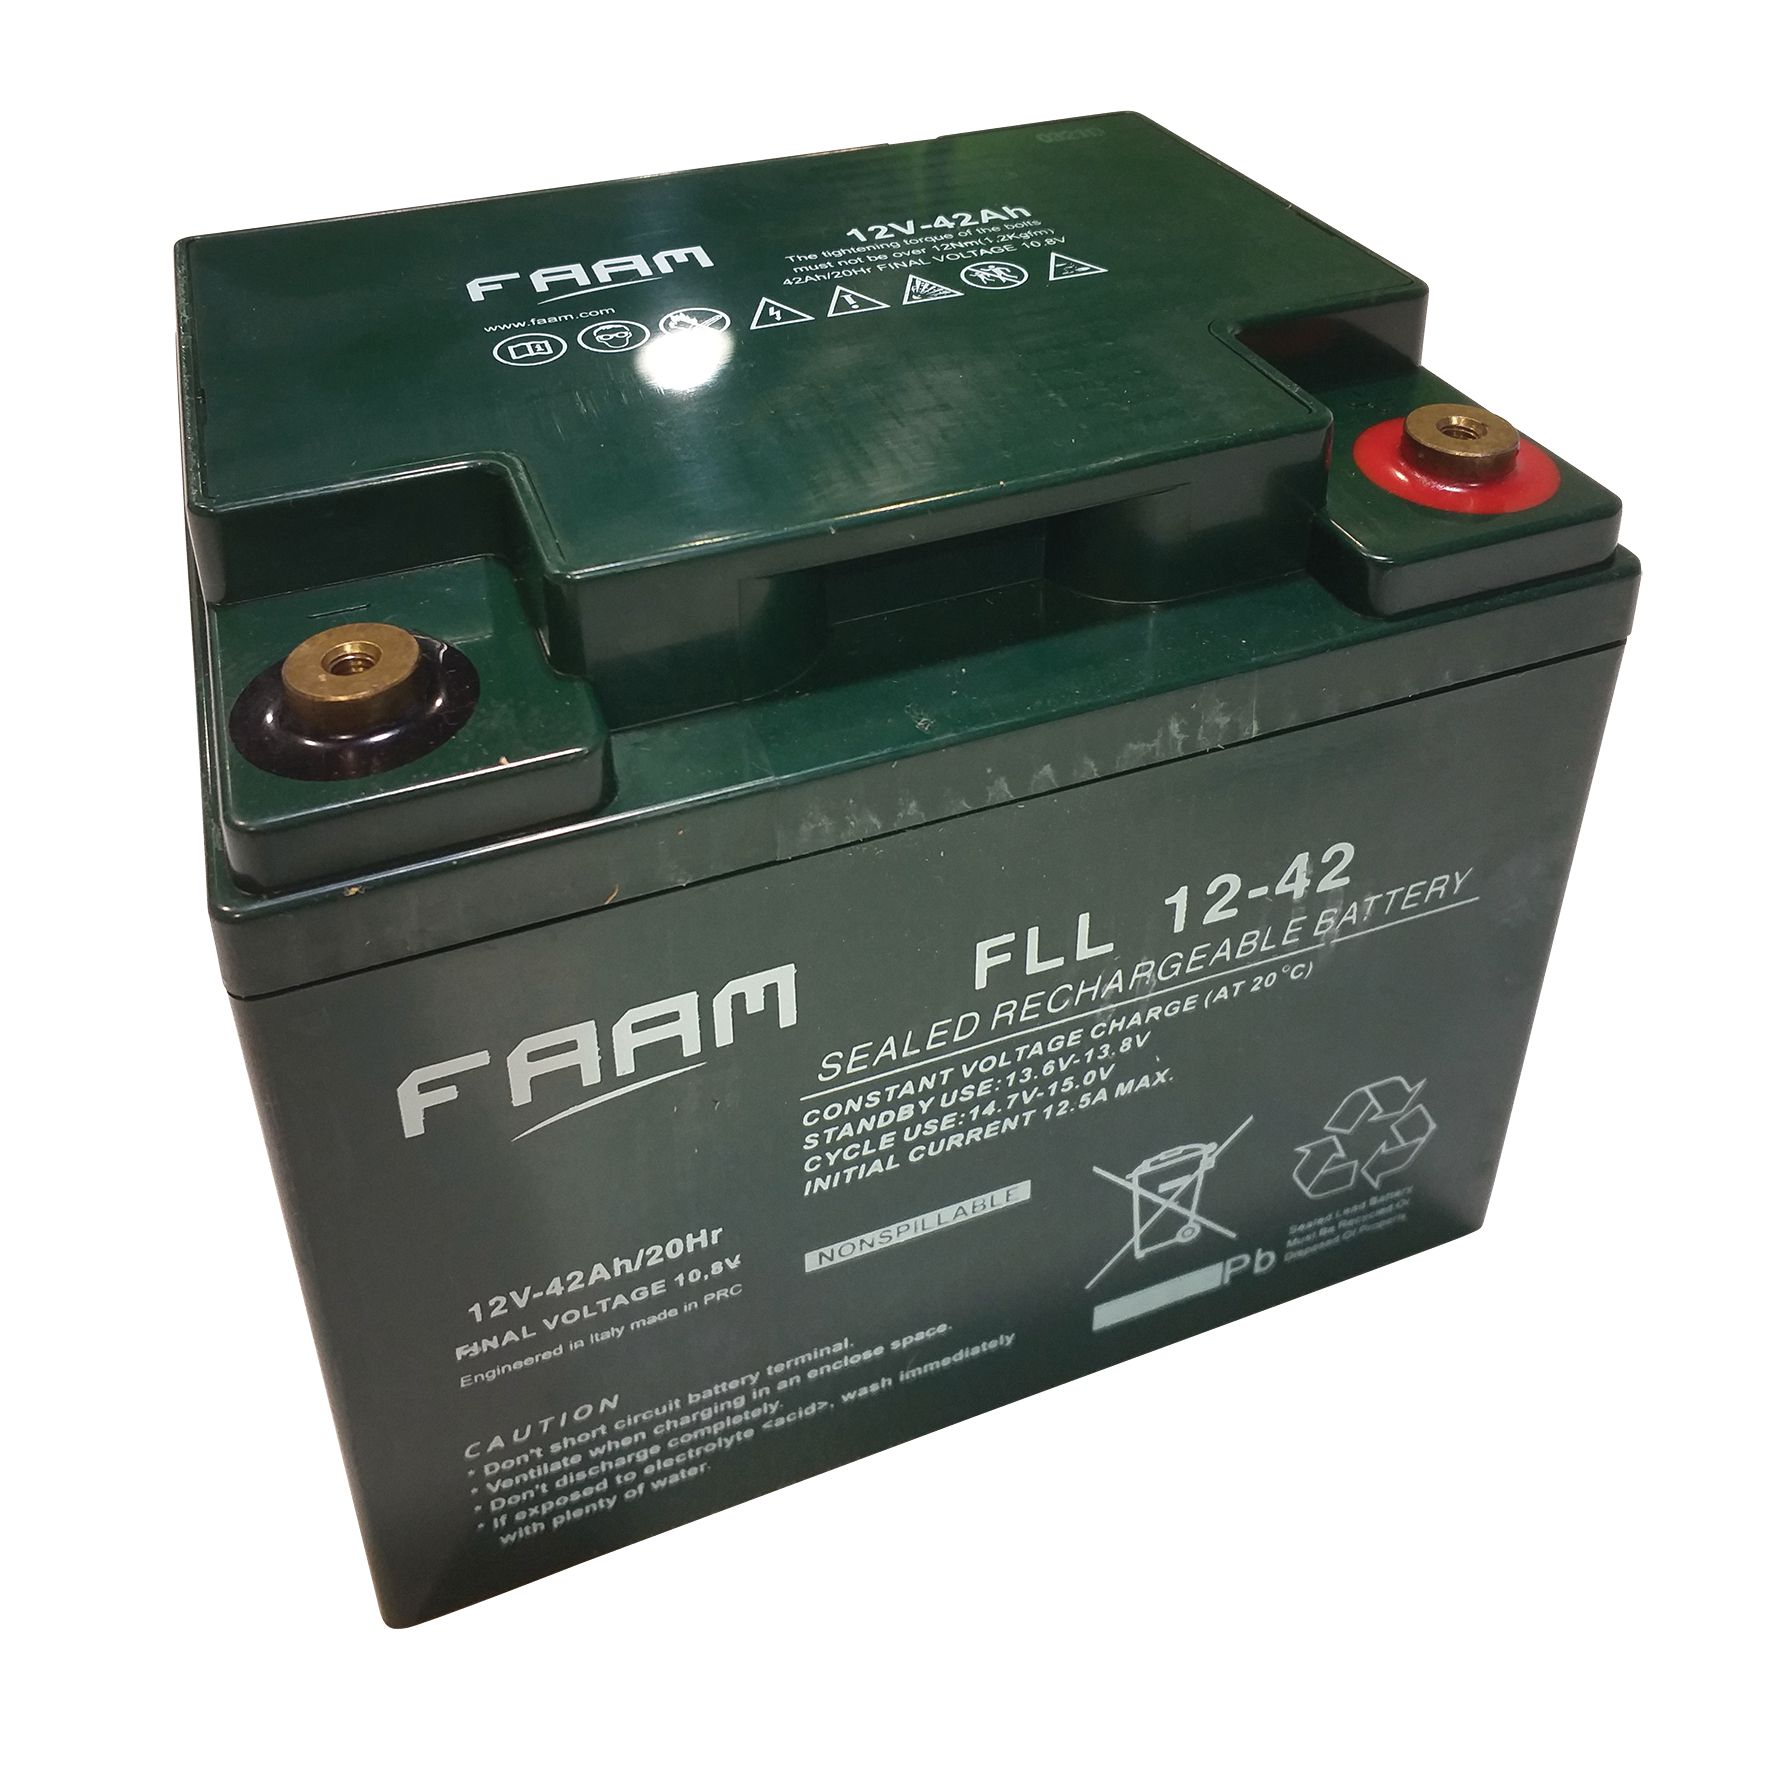 Cleancraft AGM-Batterie 12 V / 42 Ah für KM 625 / KM 825